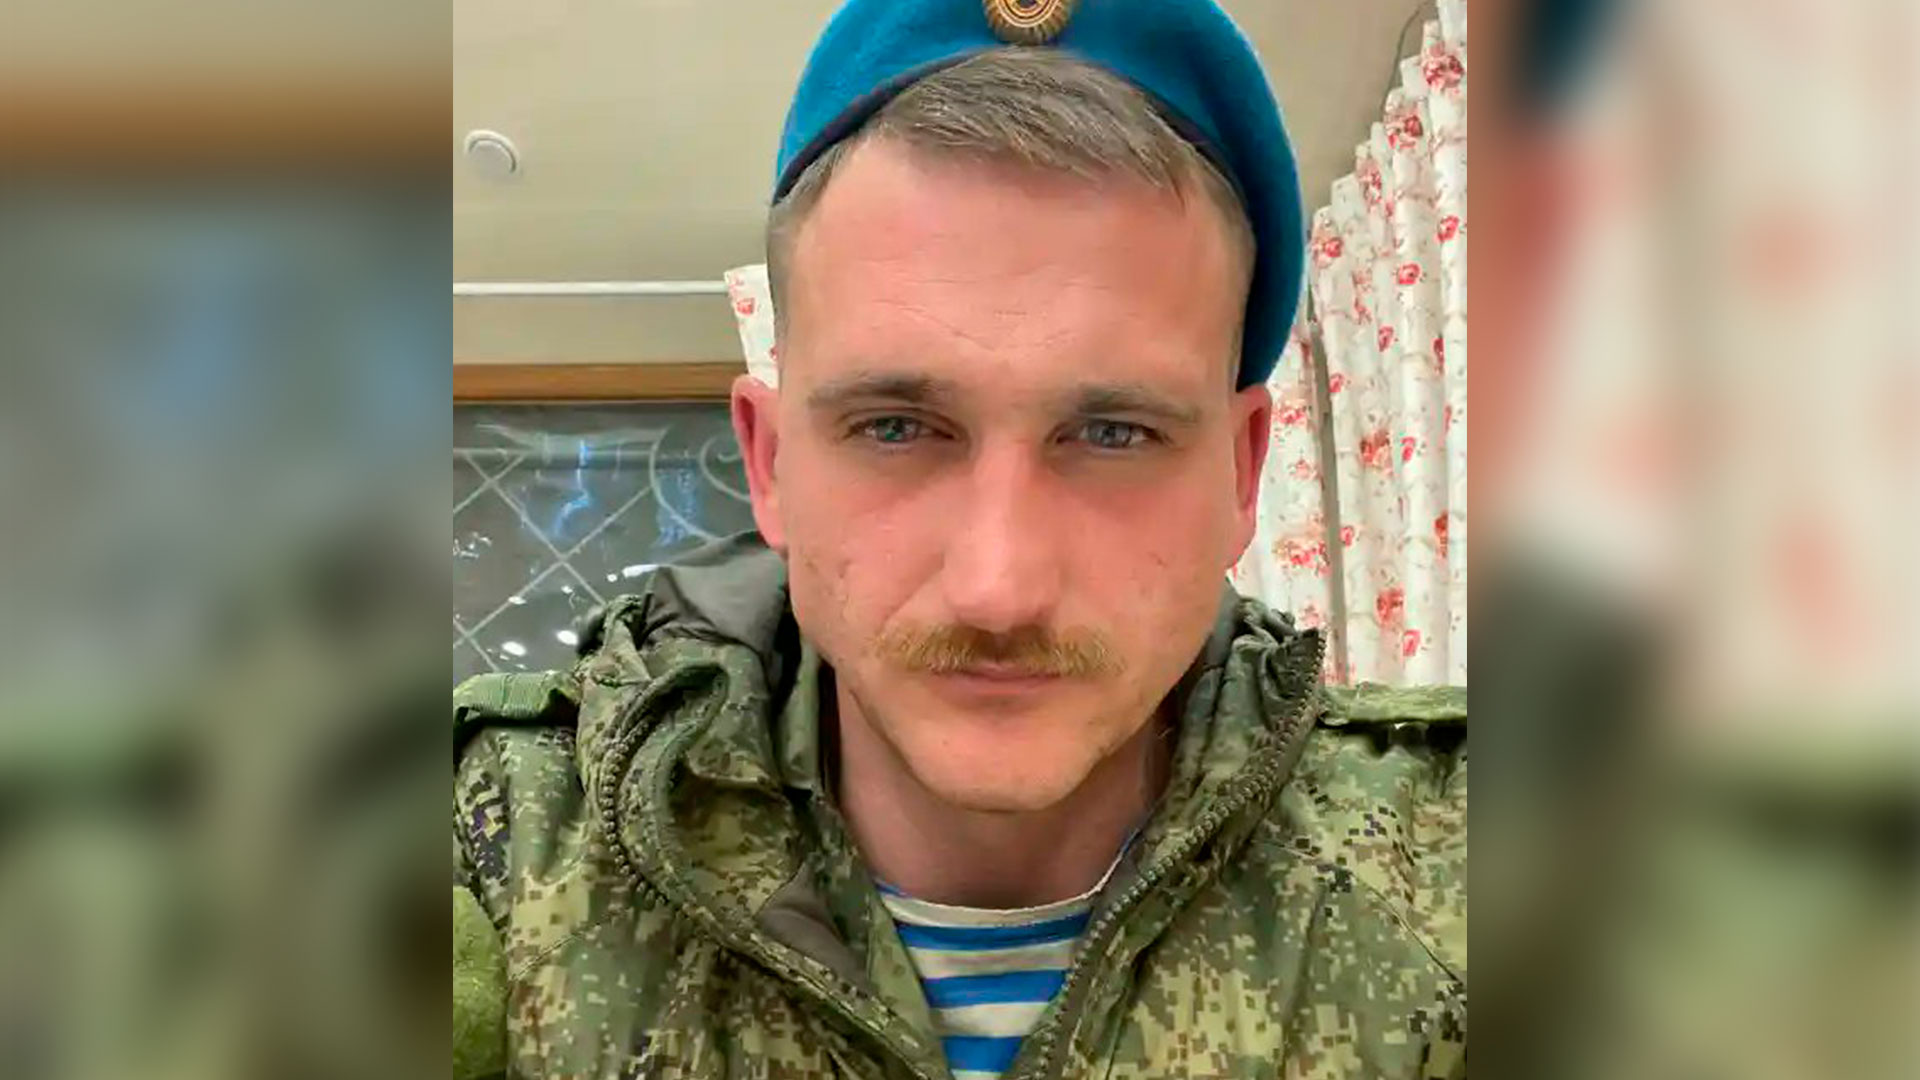 El ruso Pavel Filatyev pasó más de un mes luchando en Ucrania, fue evacuado después de haber resultado herido y decidió escribir sus recuerdos con la esperanza de que decirle a su país la verdad sobre la guerra pudiera ayudar a detenerla (Twitter: @ChrisO_wiki)